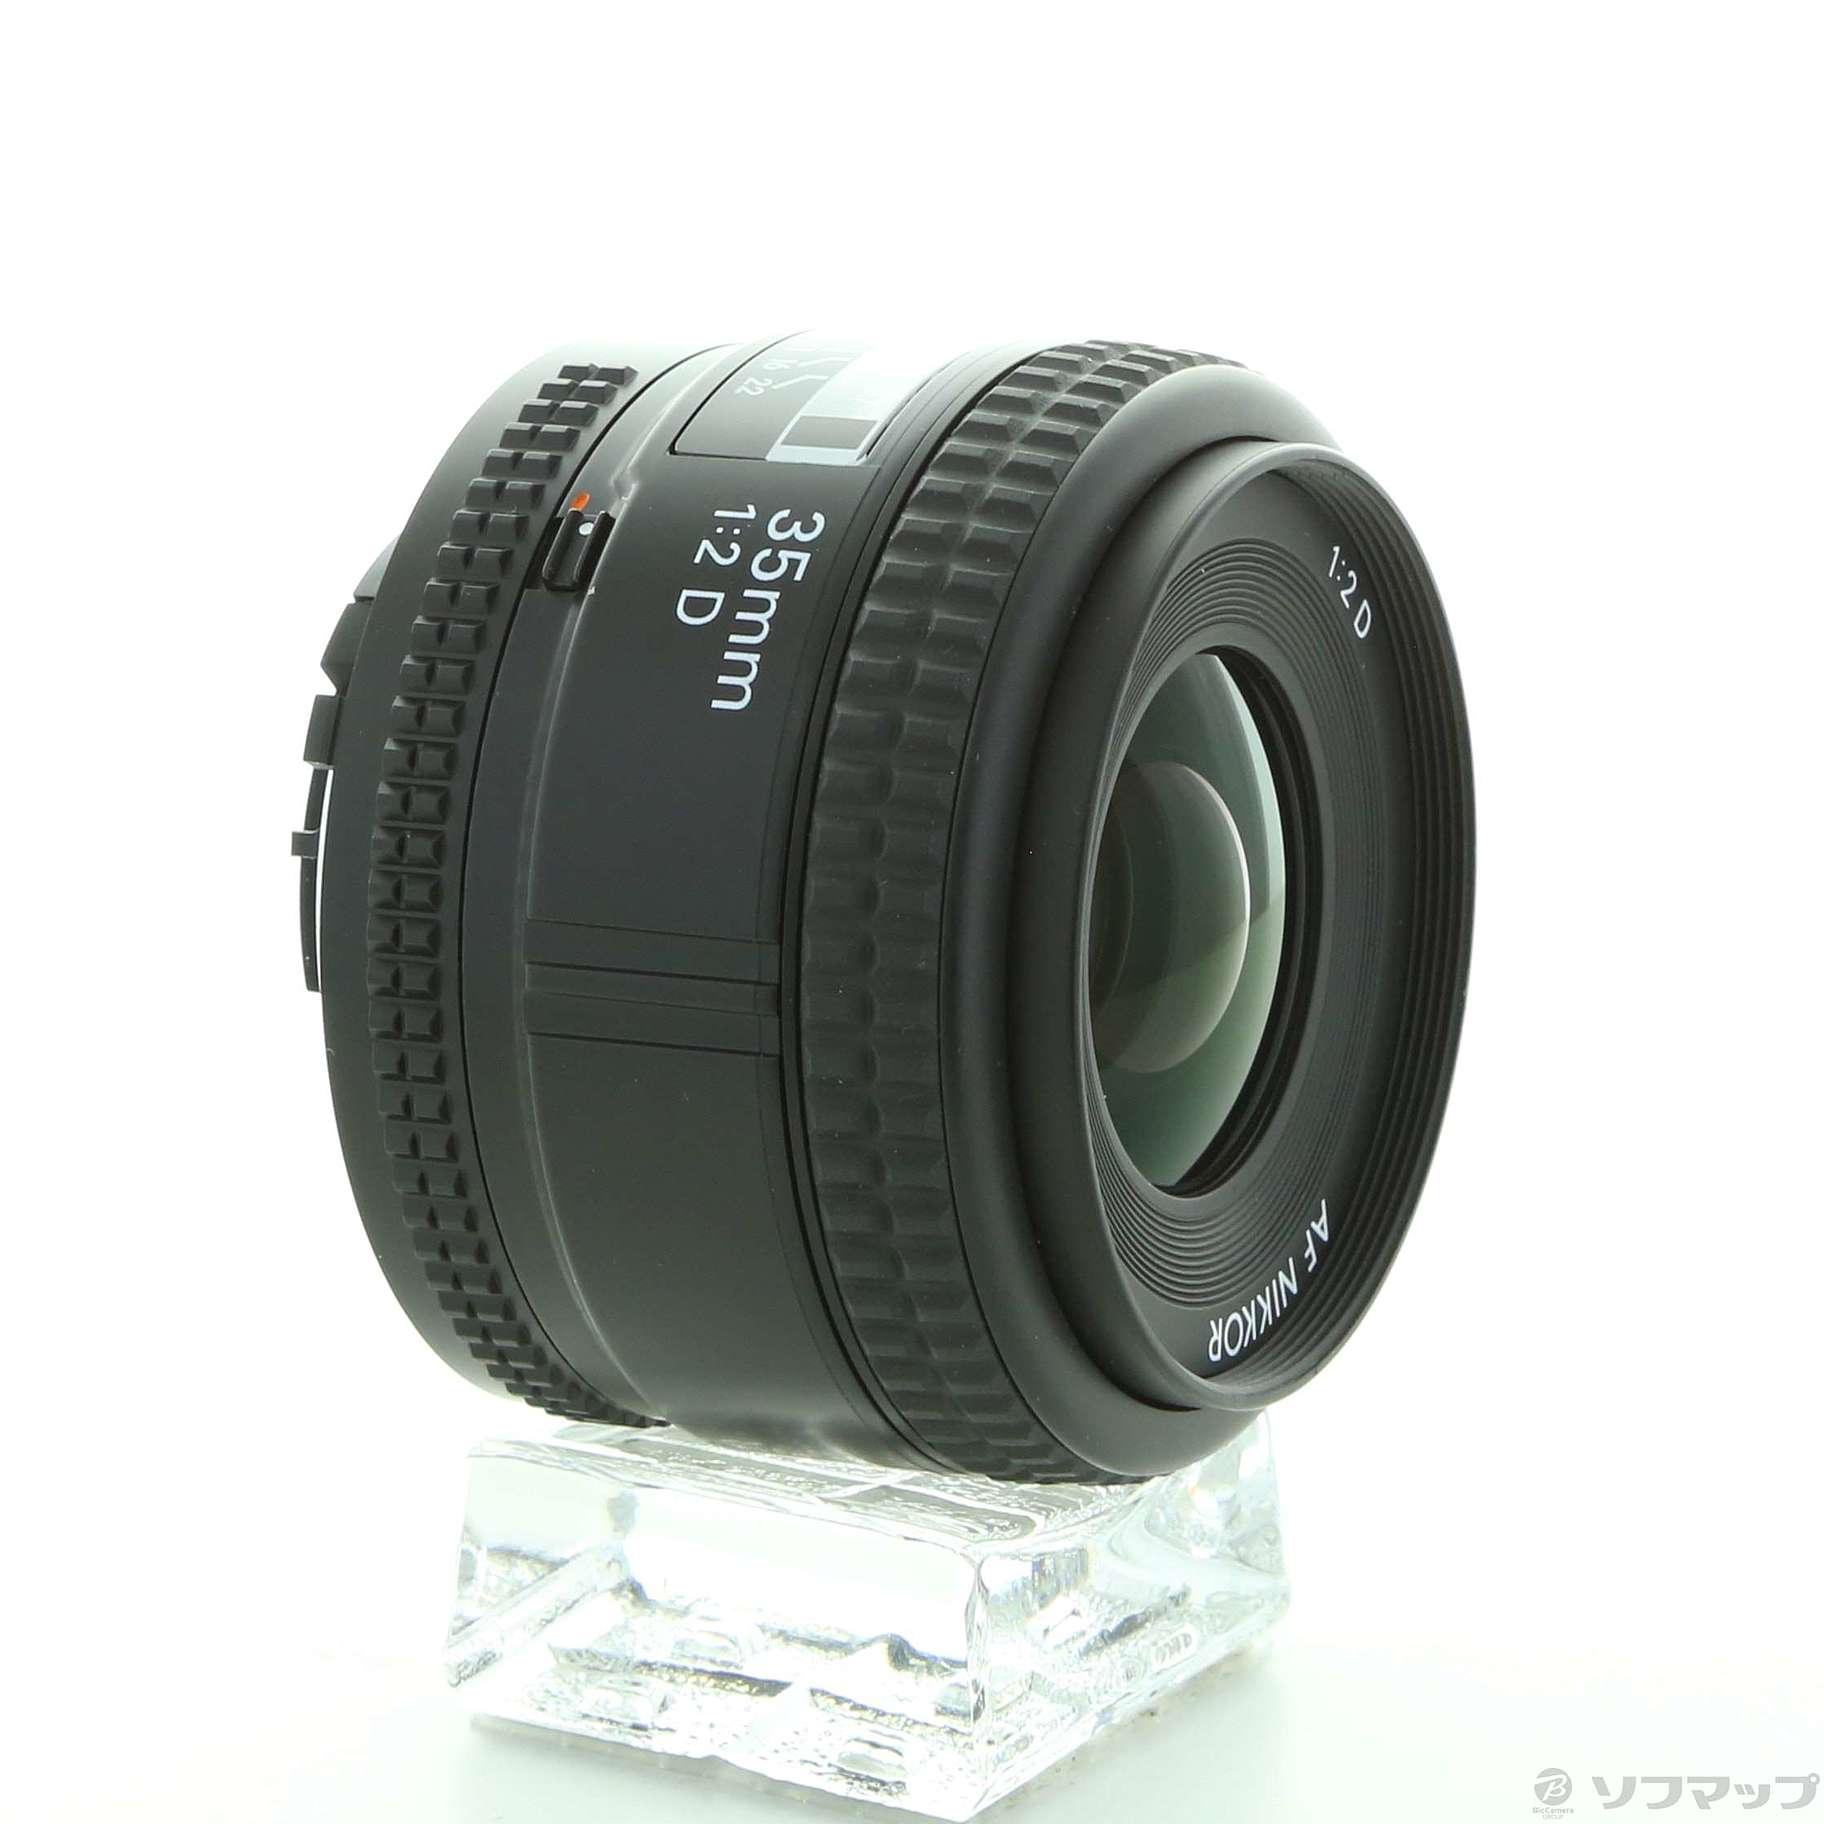 〔展示品〕 AF Nikkor 35mm F2 D (レンズ)